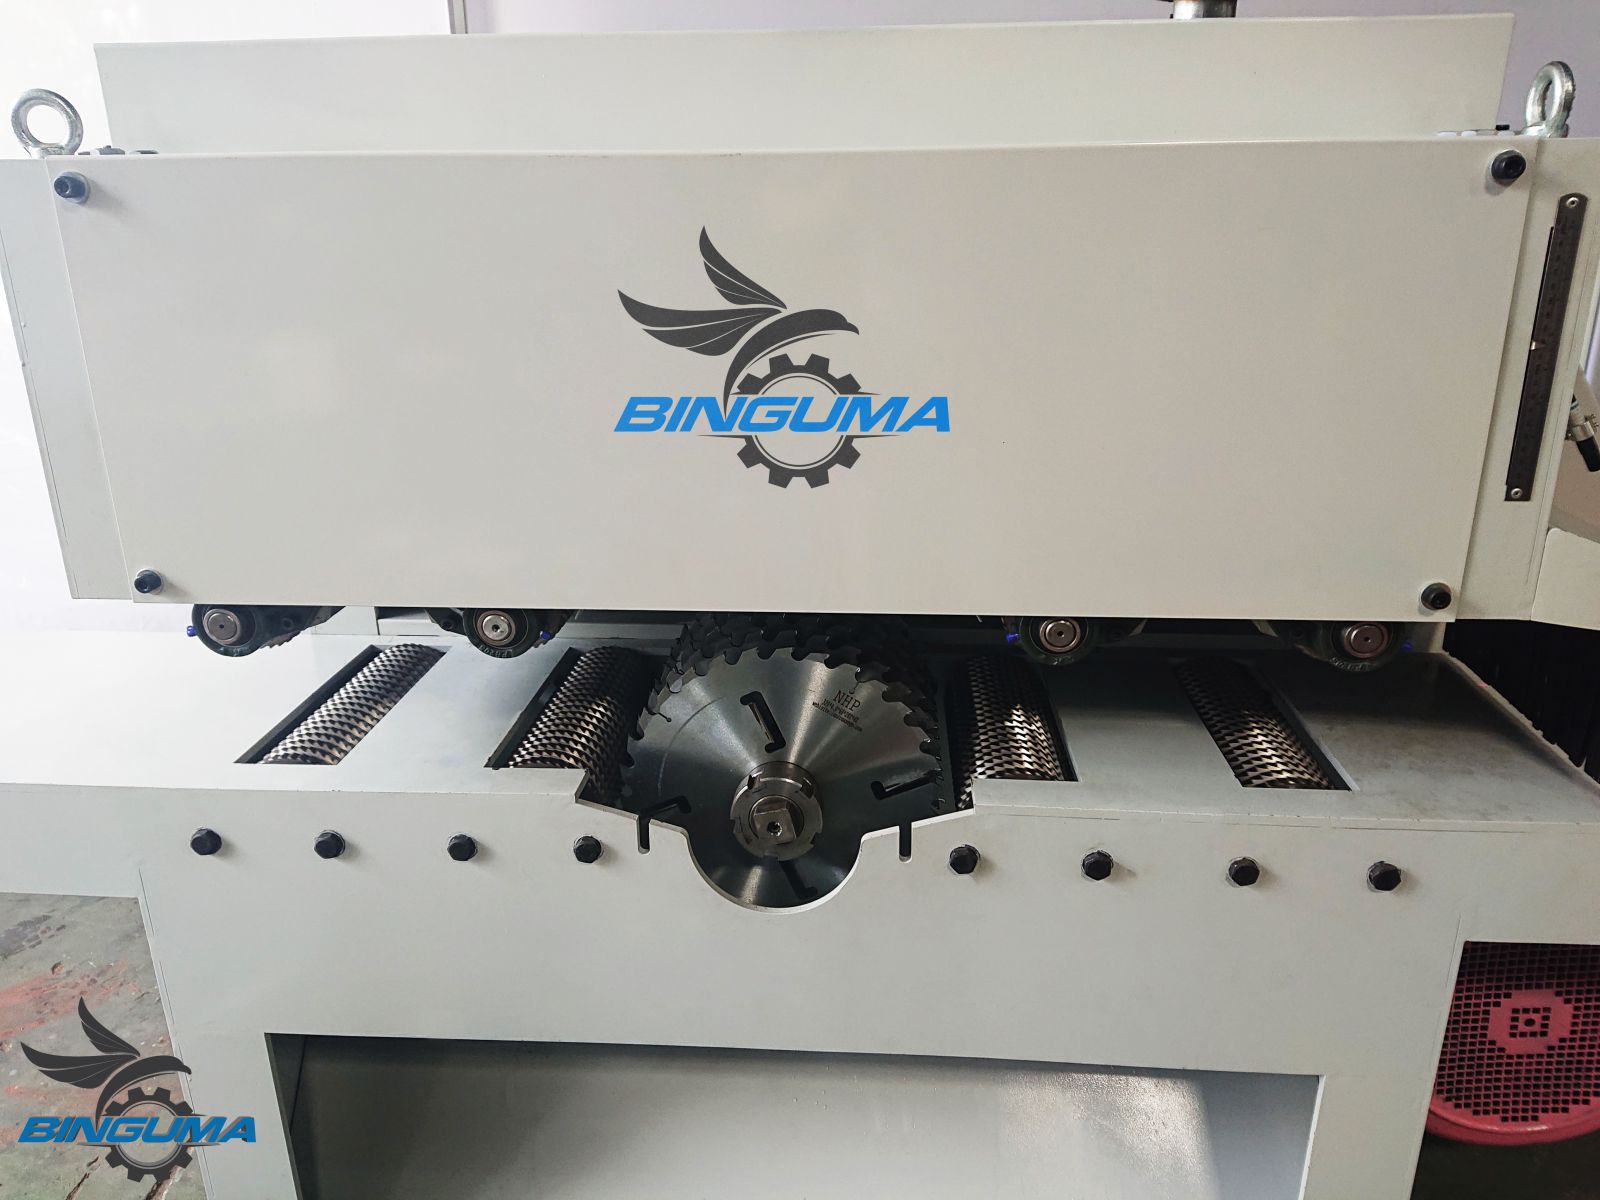 Thông số kỹ thuật cơ bản của máy xẻ nan MXN tại Binguma